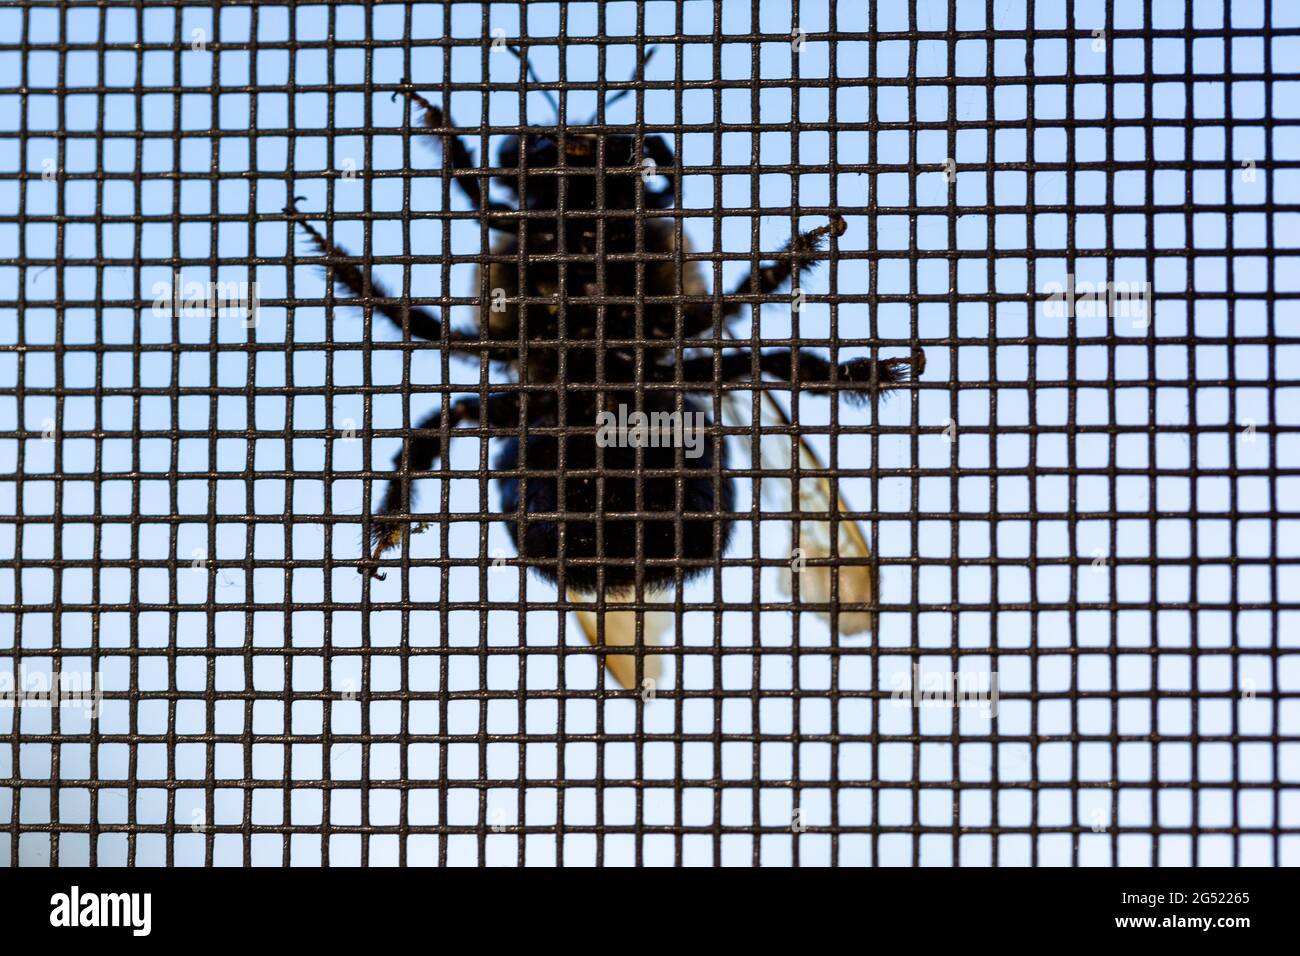 Un dessous d'une abeille de Carpenter vu reposant sur un écran métallique à fort Wayne, Indiana, États-Unis. Banque D'Images